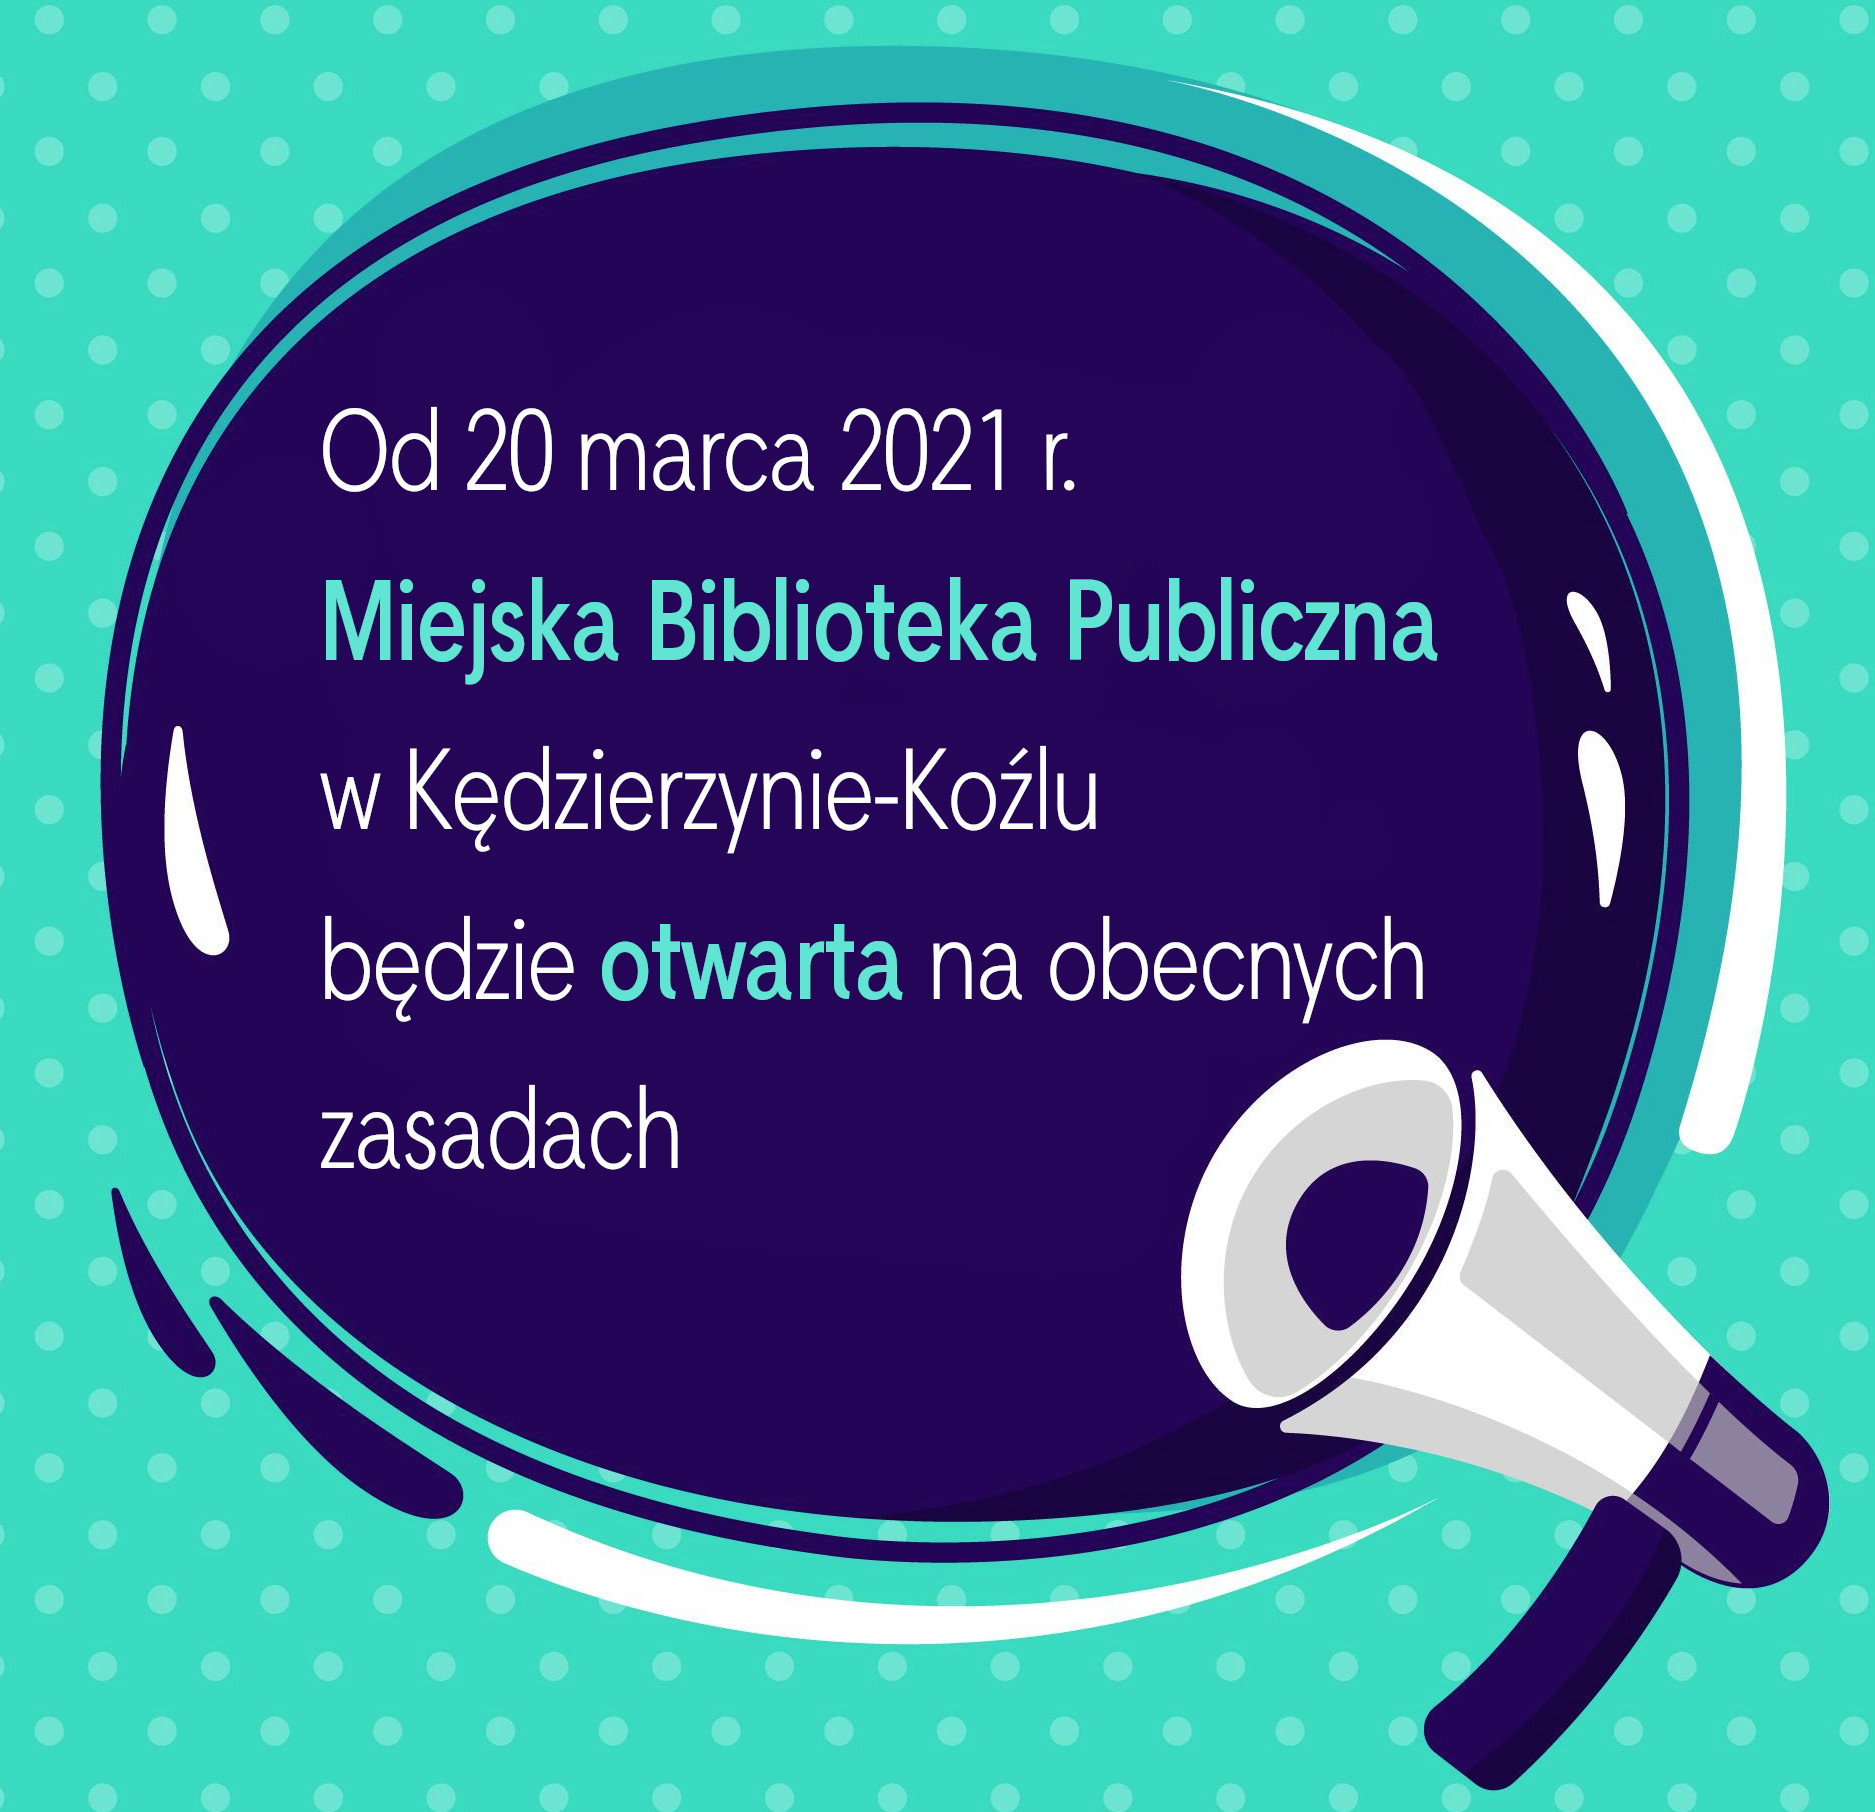 od 20 marca nasza biblioteka będzie otwarta na dotychczasowych zasadach